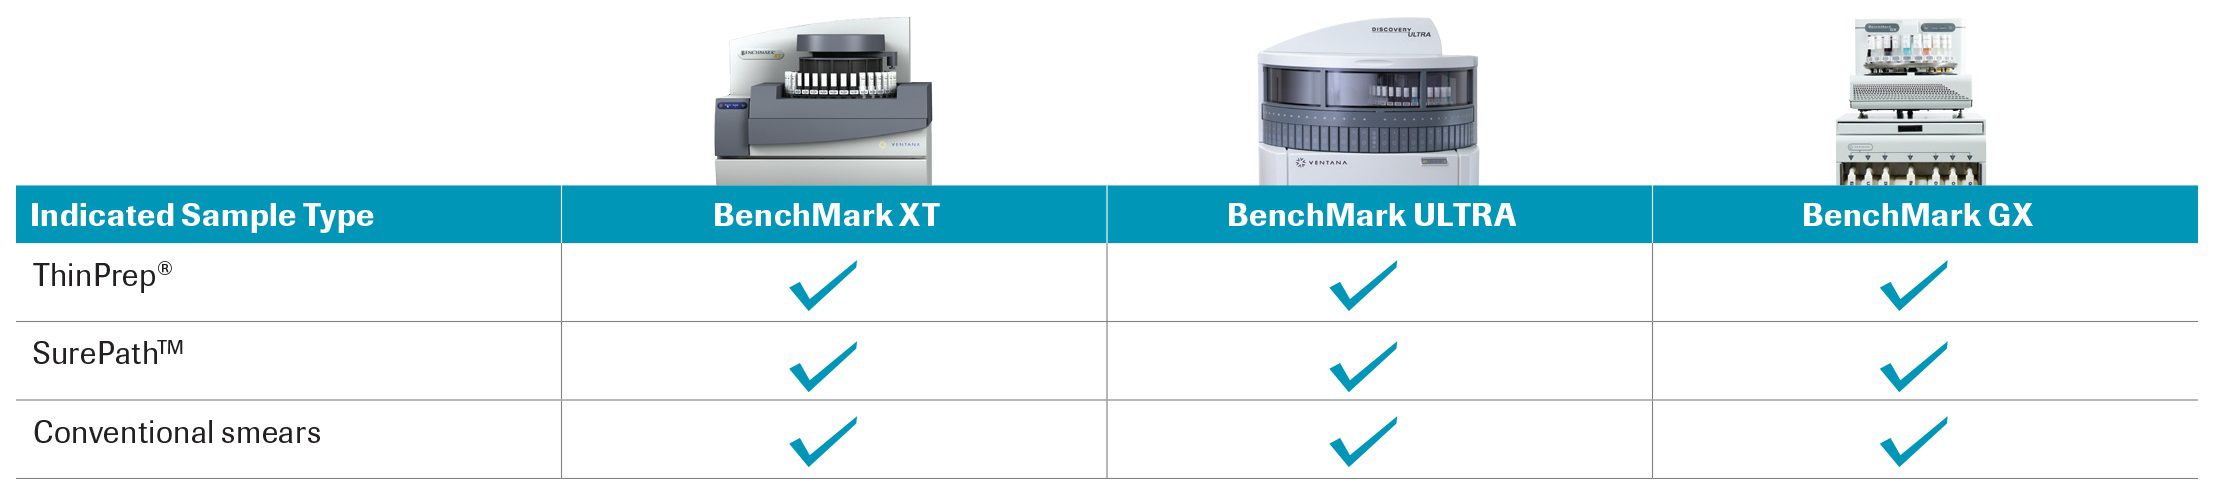 La tecnología de biomarcadores de tinción dual avanzada es compatible en toda la cartera de sistemas Benchmark con varios tipos de medios de recogida de muestras.